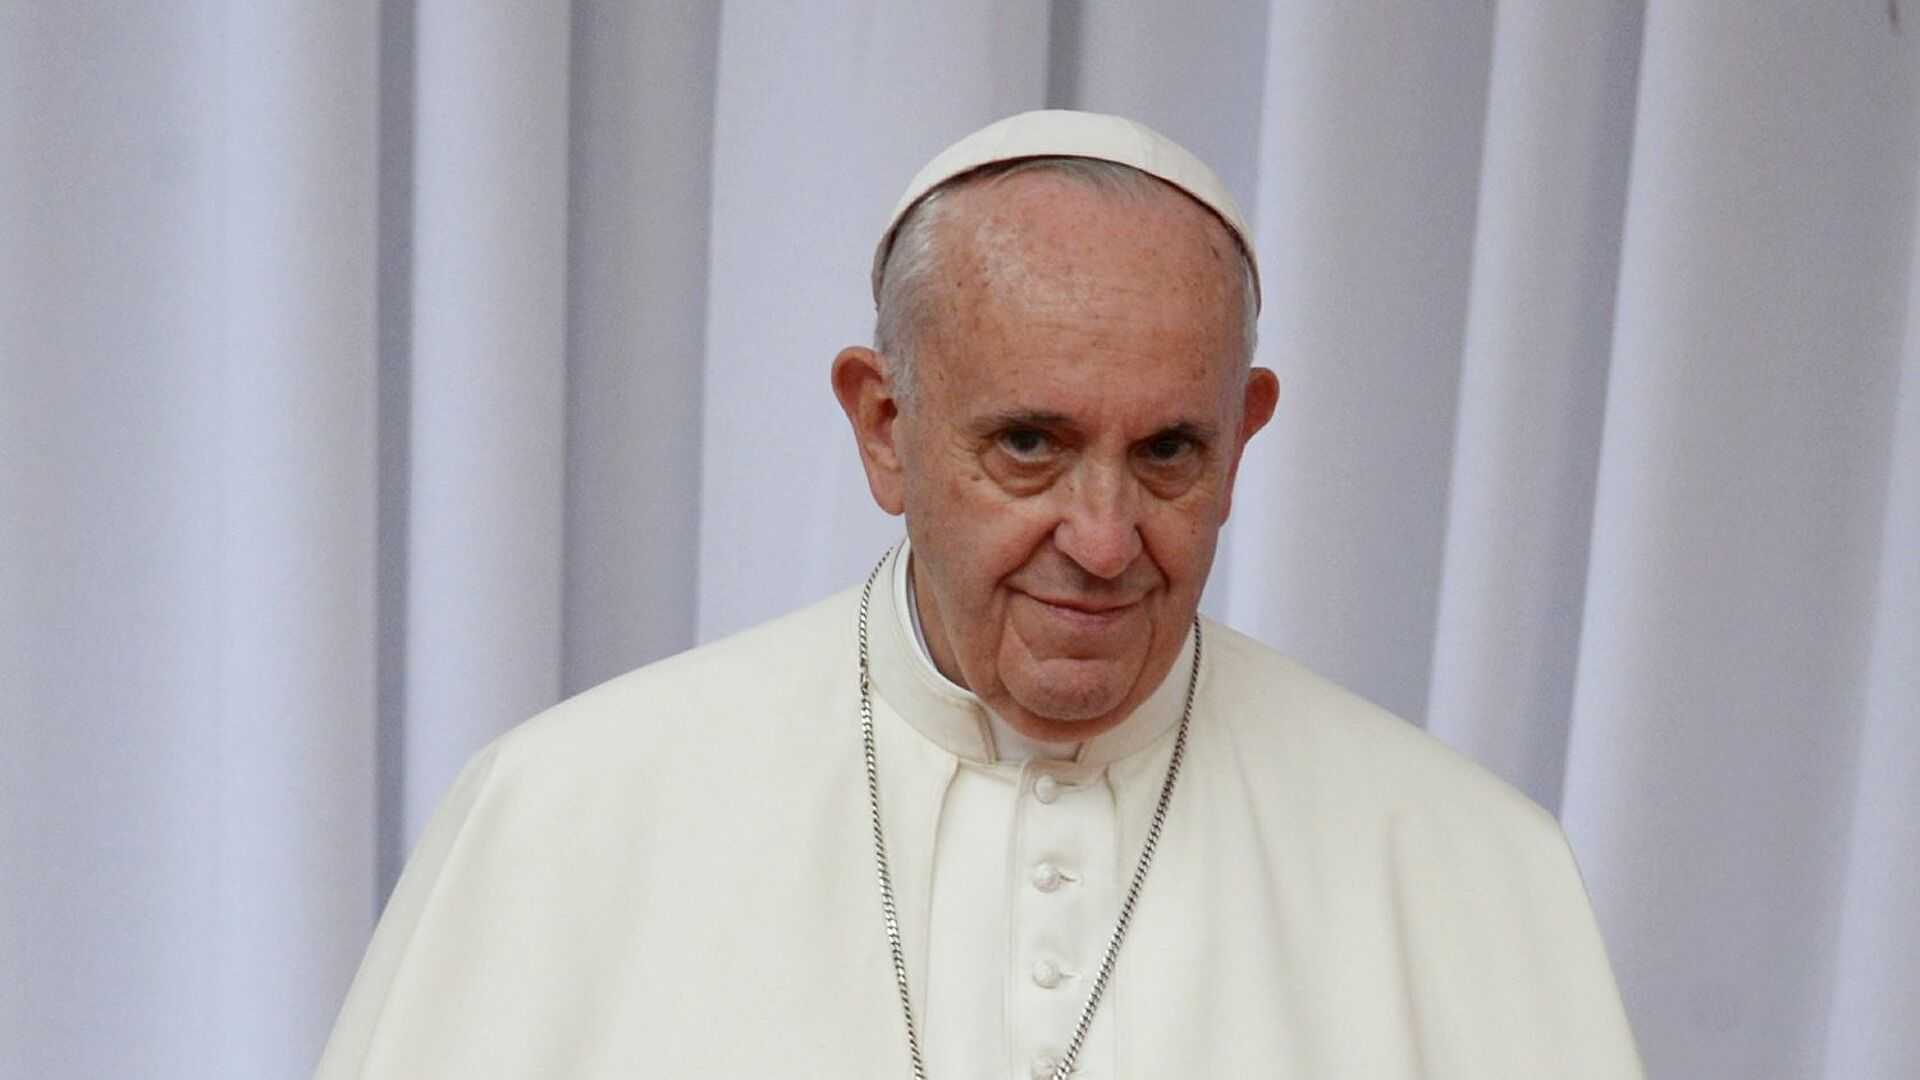 Папа Римский по ошибке процитировал Путина